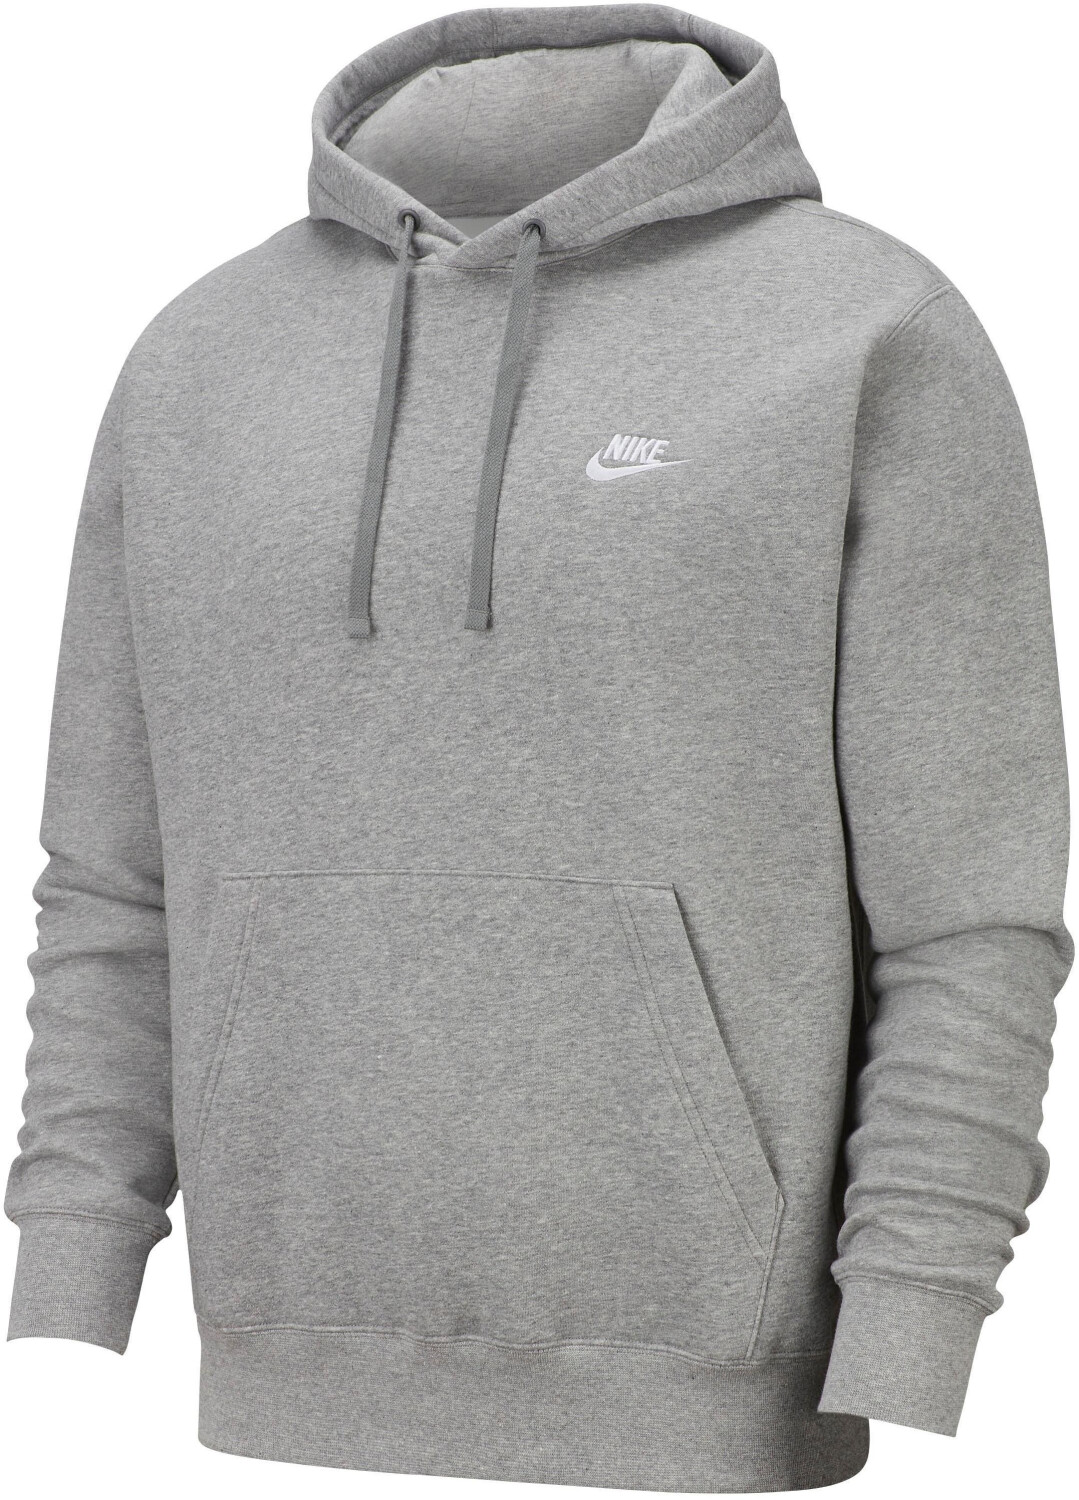 hoodie gris